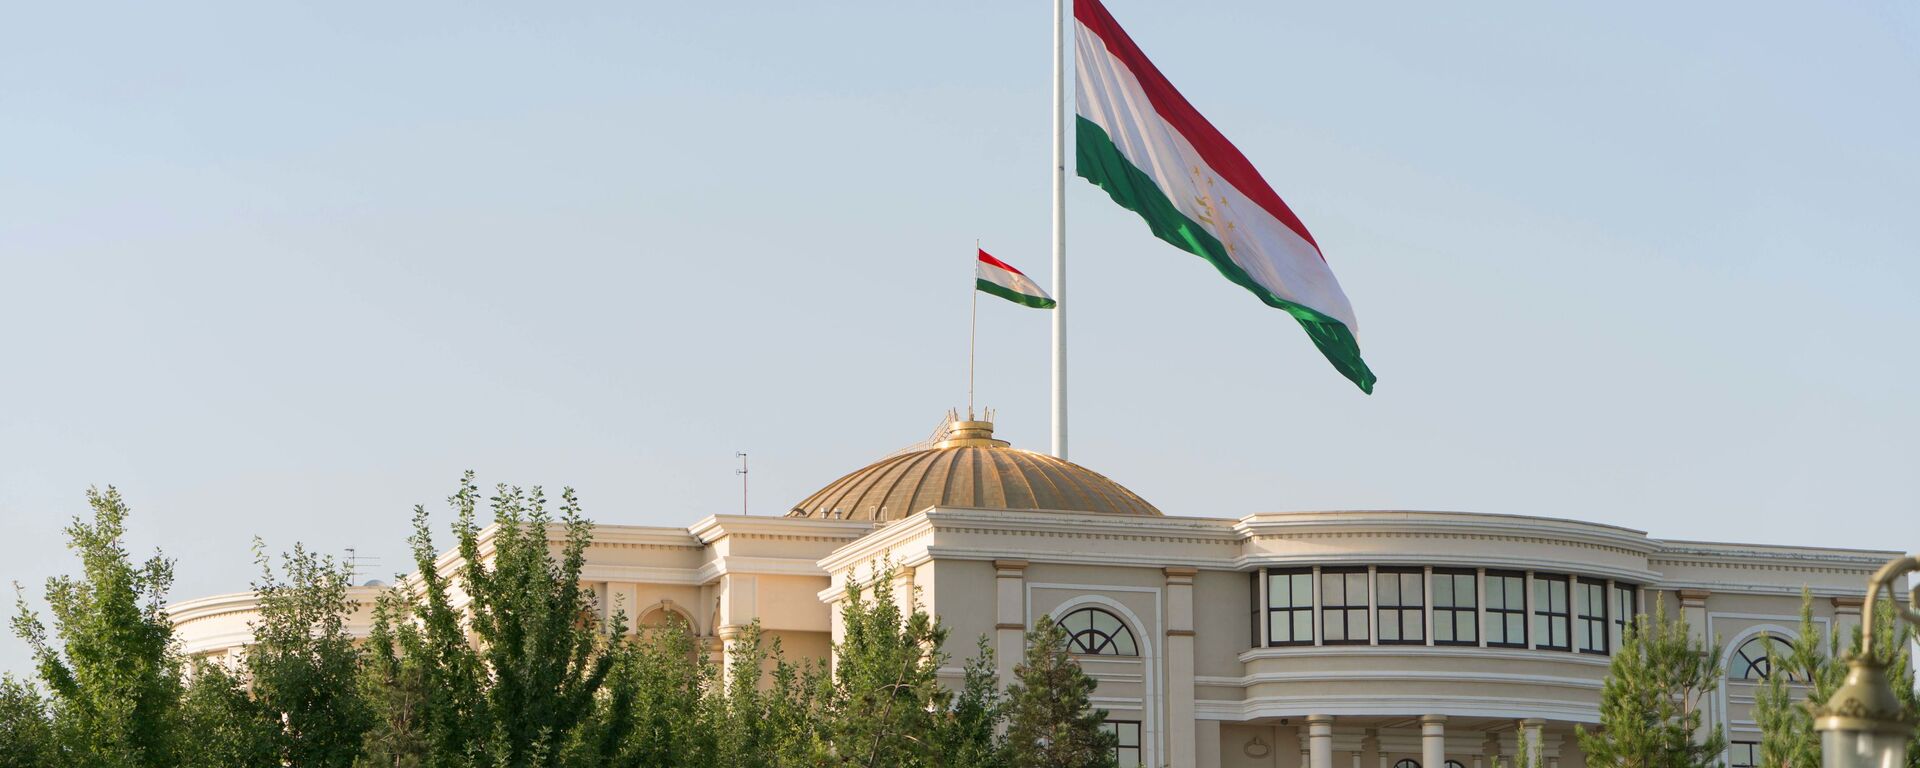 Здание правительства Республики Таджикистан в Душанбе - Sputnik Таджикистан, 1920, 11.12.2020